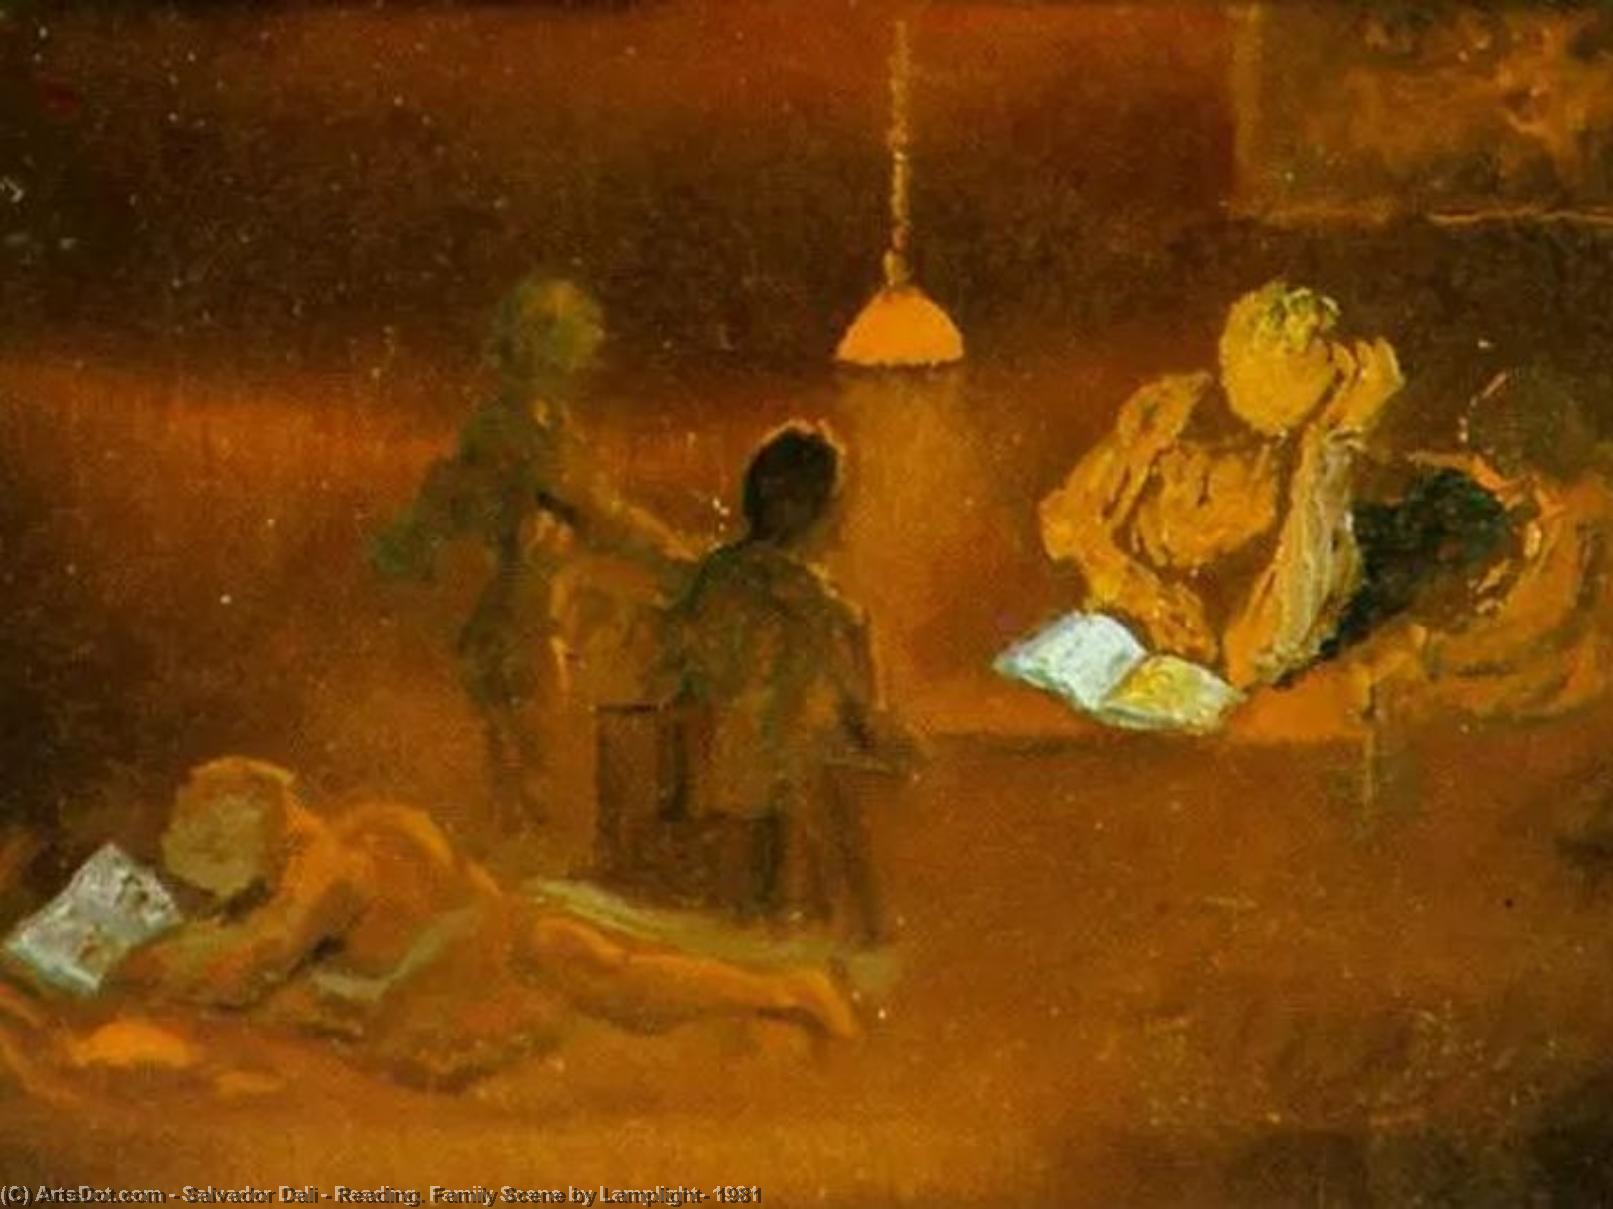 WikiOO.org - Enciklopedija dailės - Tapyba, meno kuriniai Salvador Dali - Reading. Family Scene by Lamplight, 1981